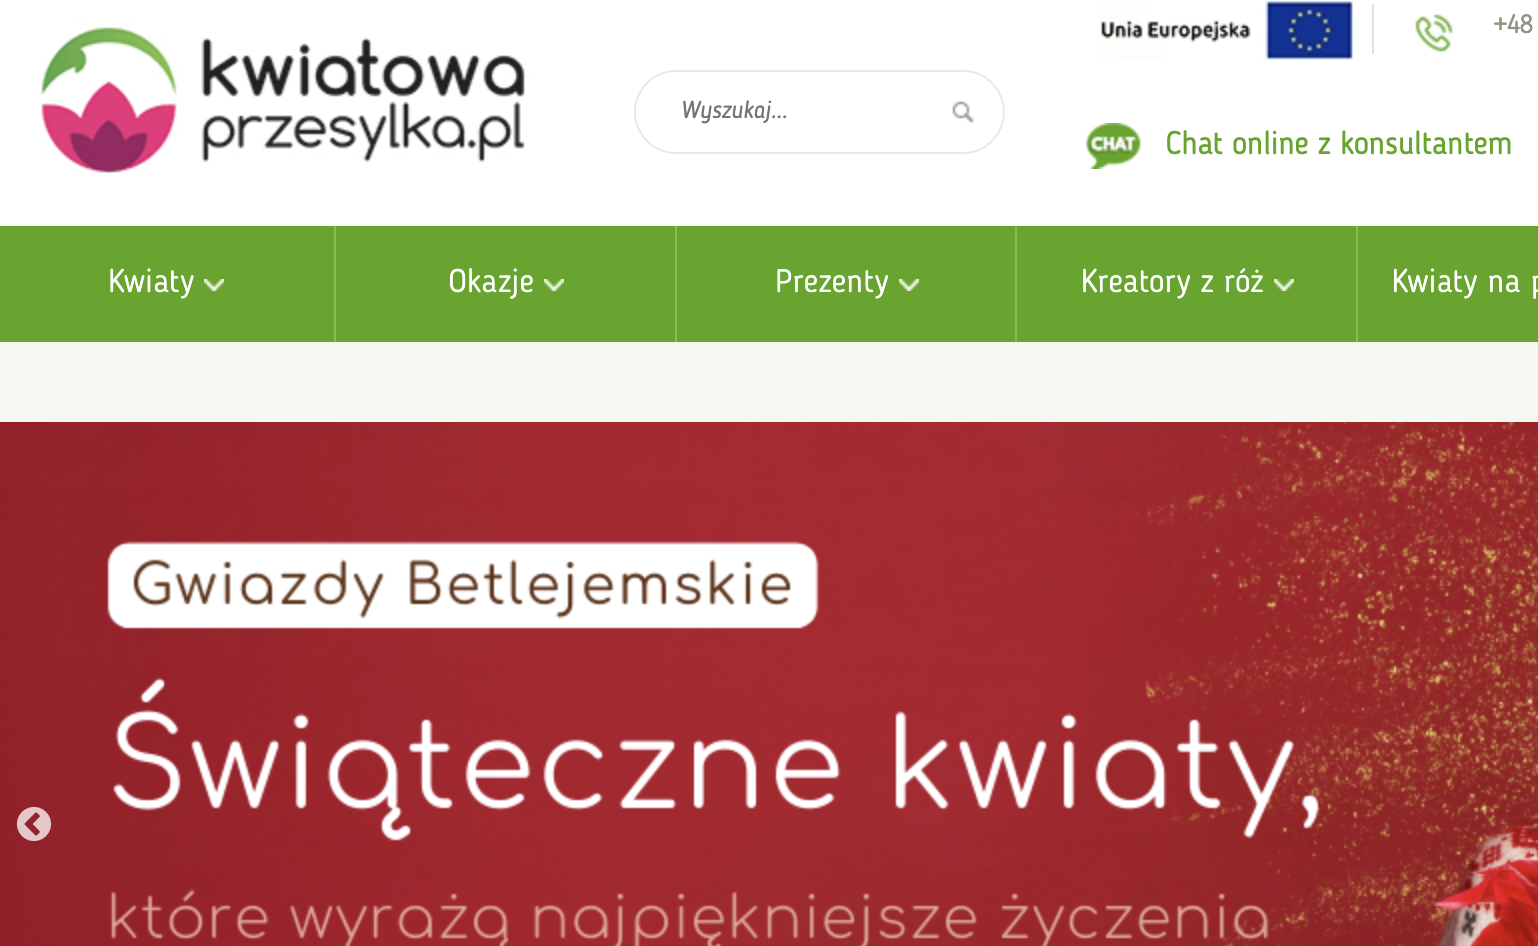 kwiatowaprzesylka.pl: widok sklepu internetowego